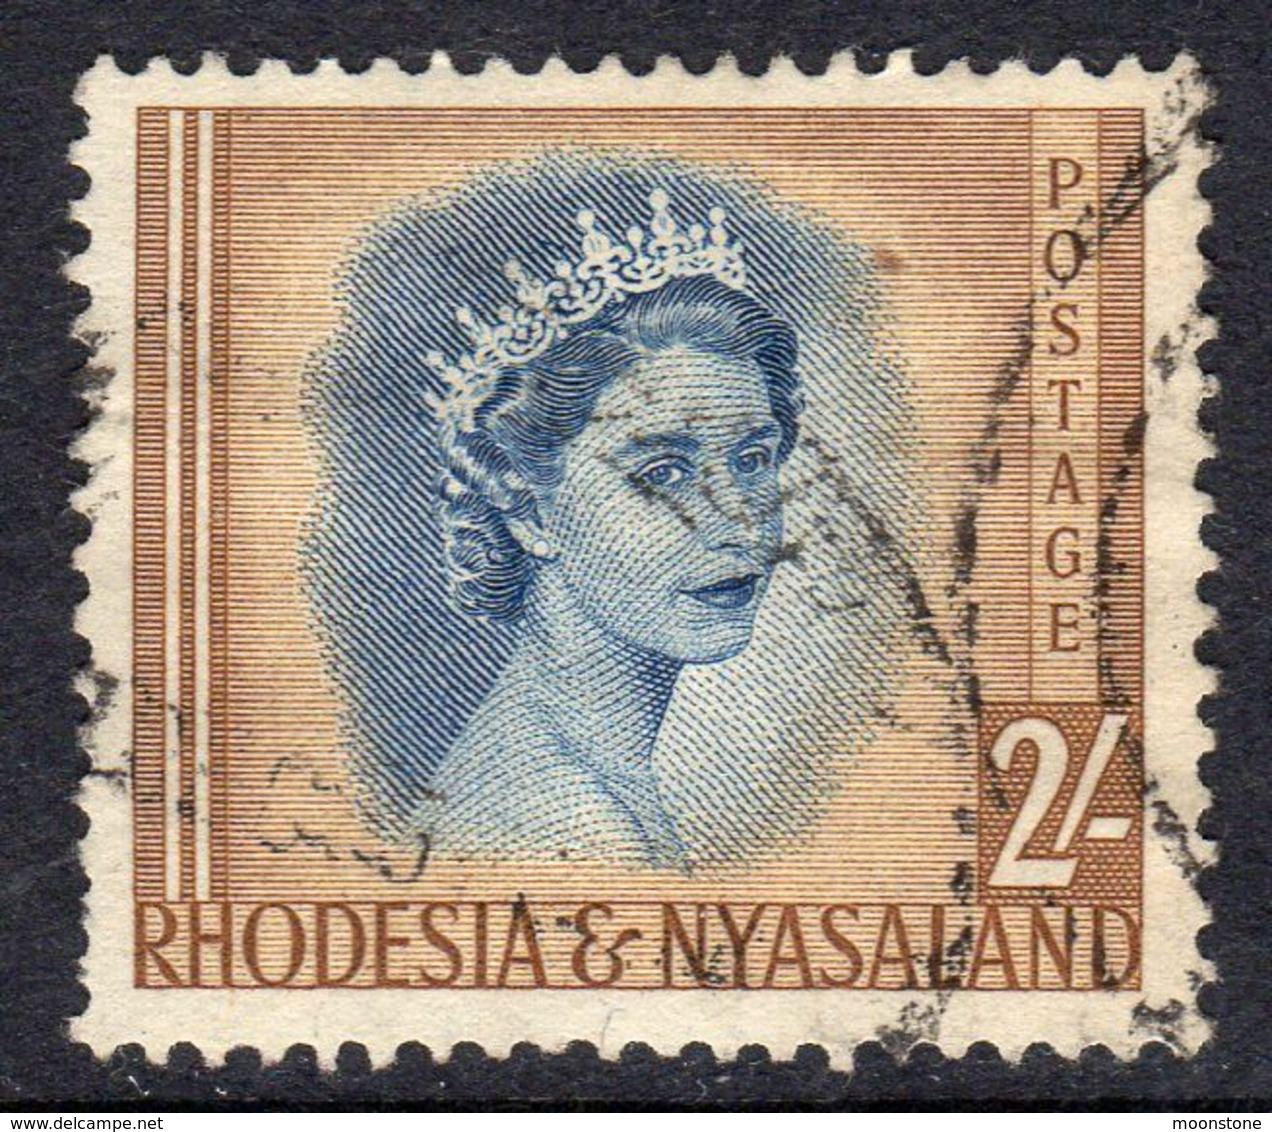 Rhodesia & Nyasaland 1954 Definitives 2/- Value, Used, SG 11 (BA) - Rhodesië & Nyasaland (1954-1963)